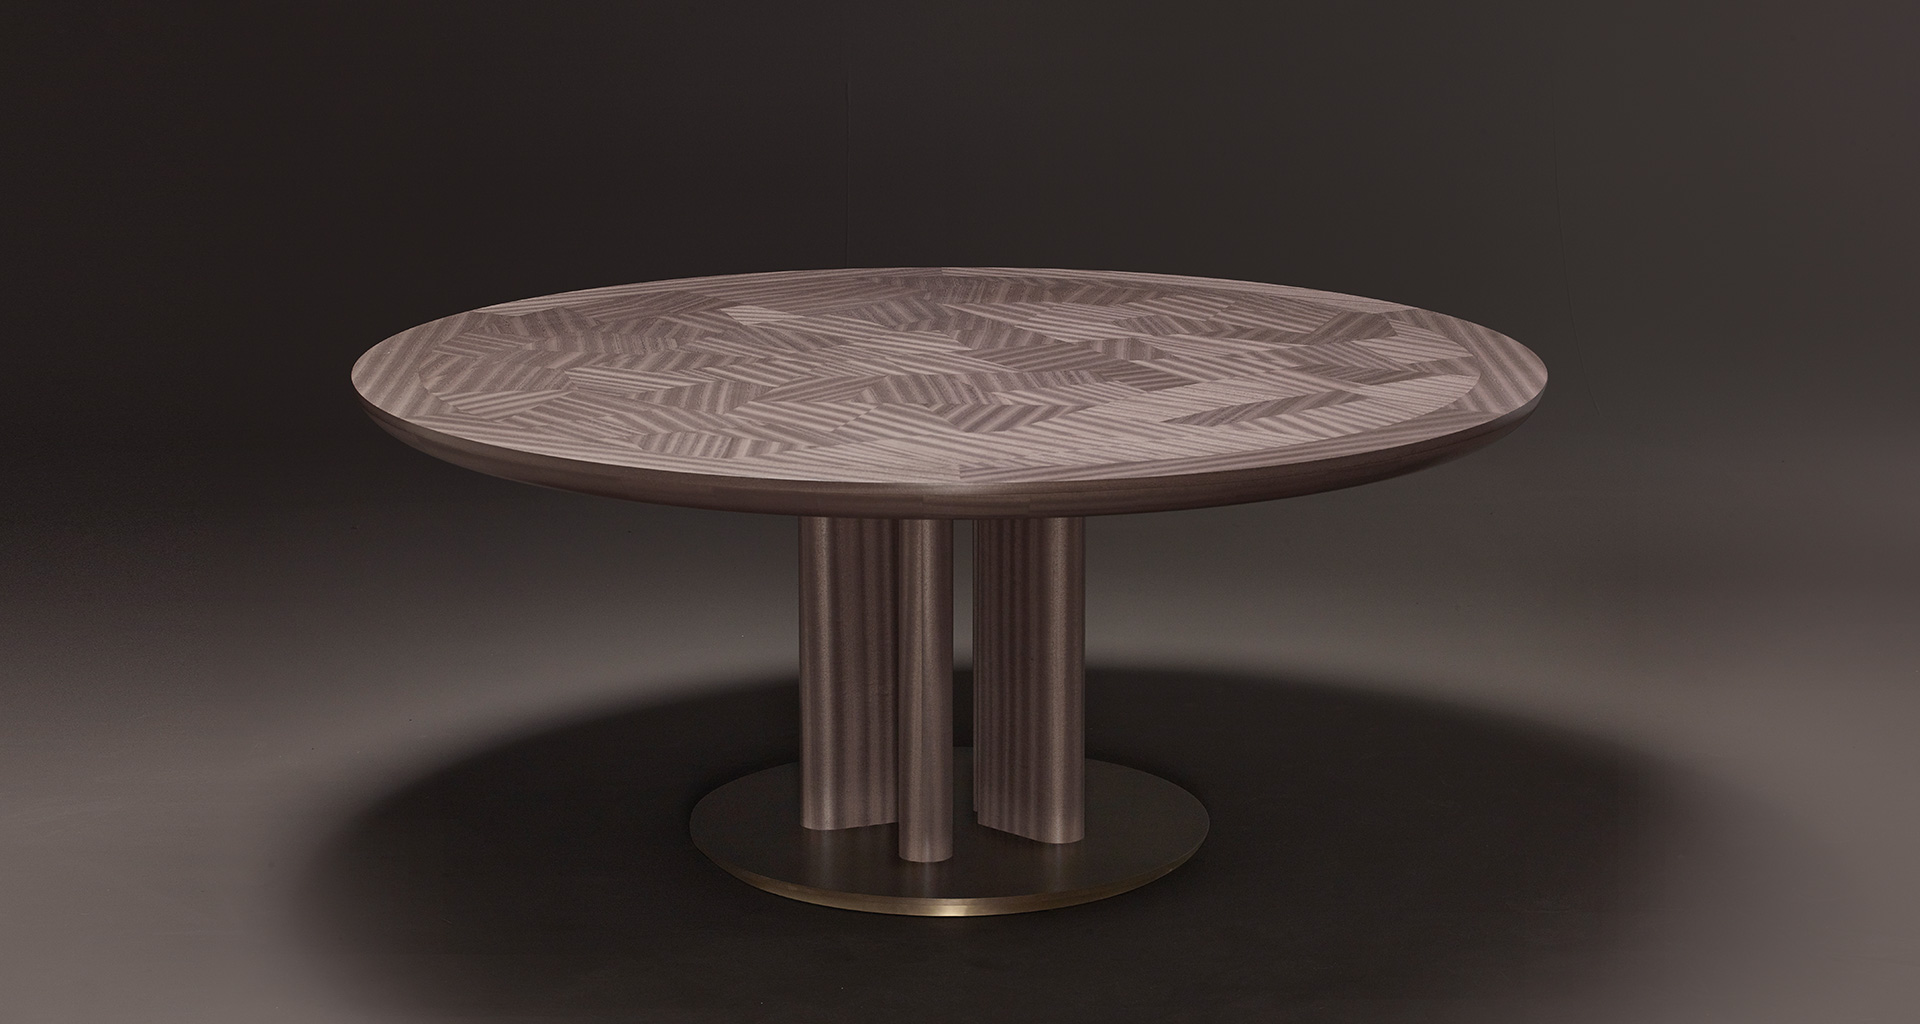 Orazio è un tavolo da pranzo in legno e bronzo della collezione Amaranthine Tales di Promemoria | Promemoria